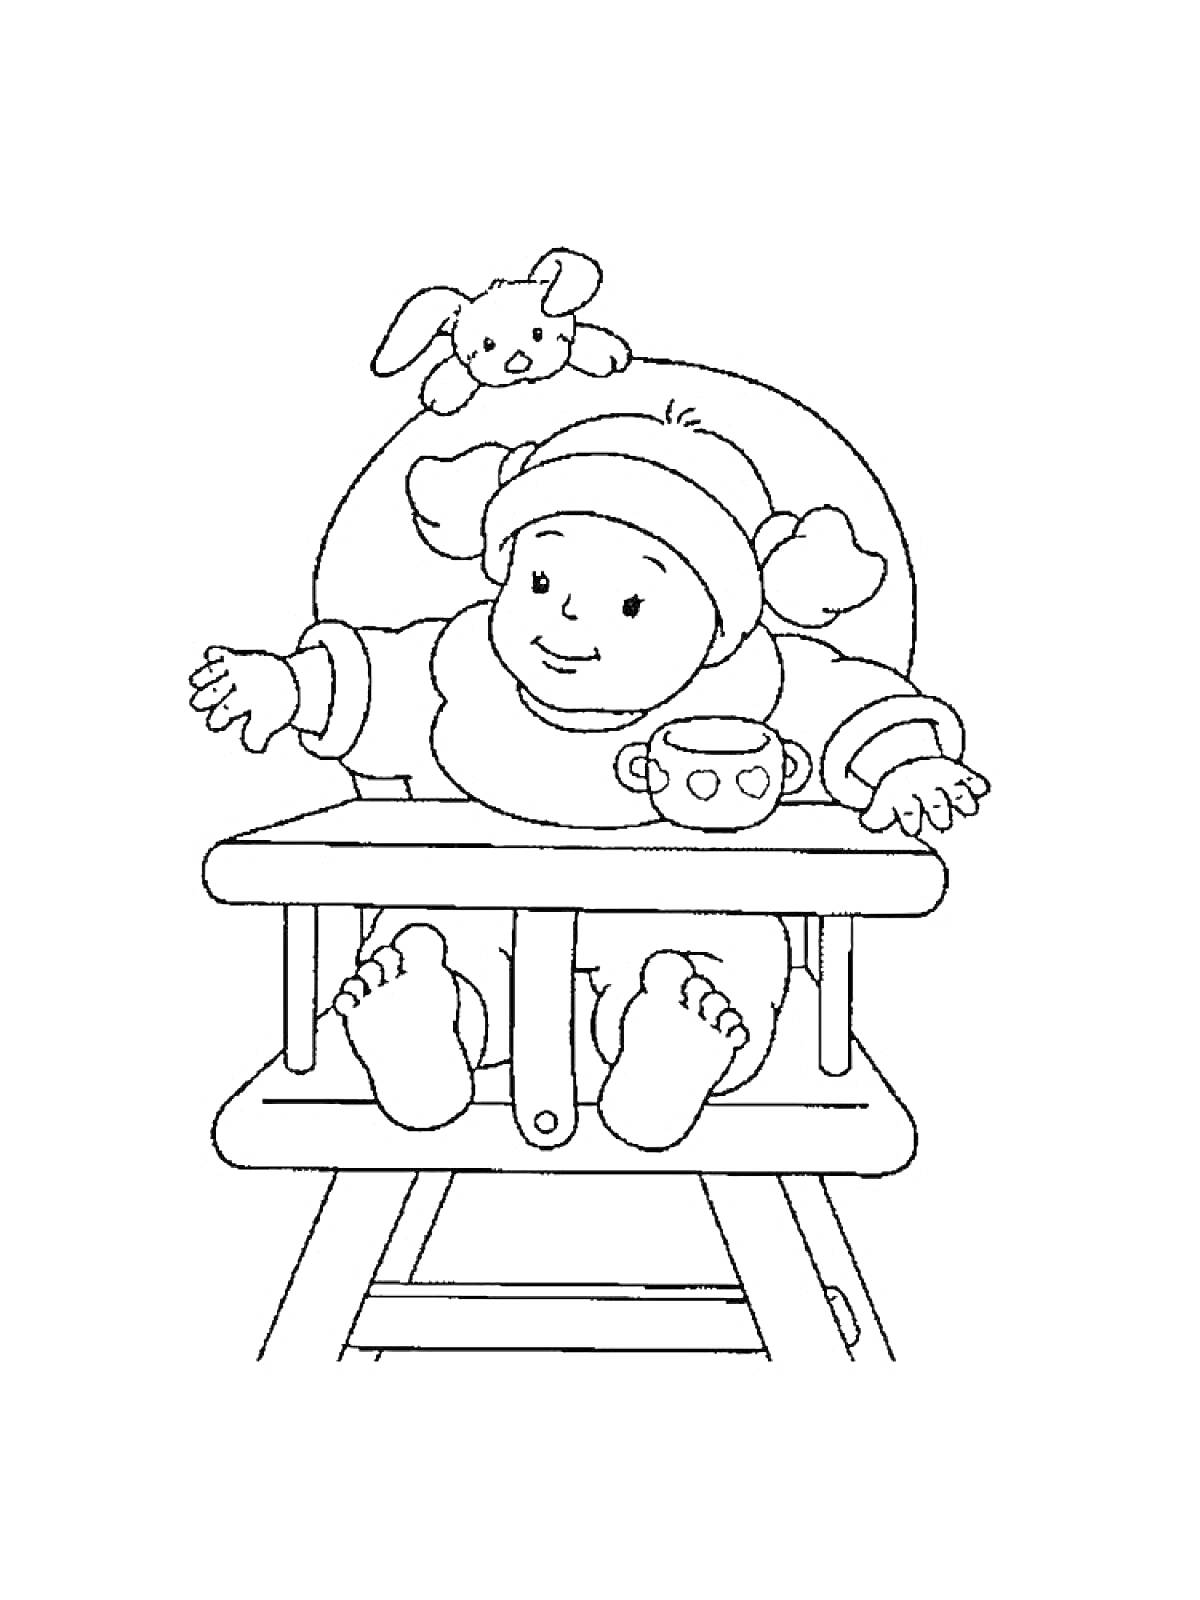 Младенец в детском стульчике с игрушкой кроликом и чашкой